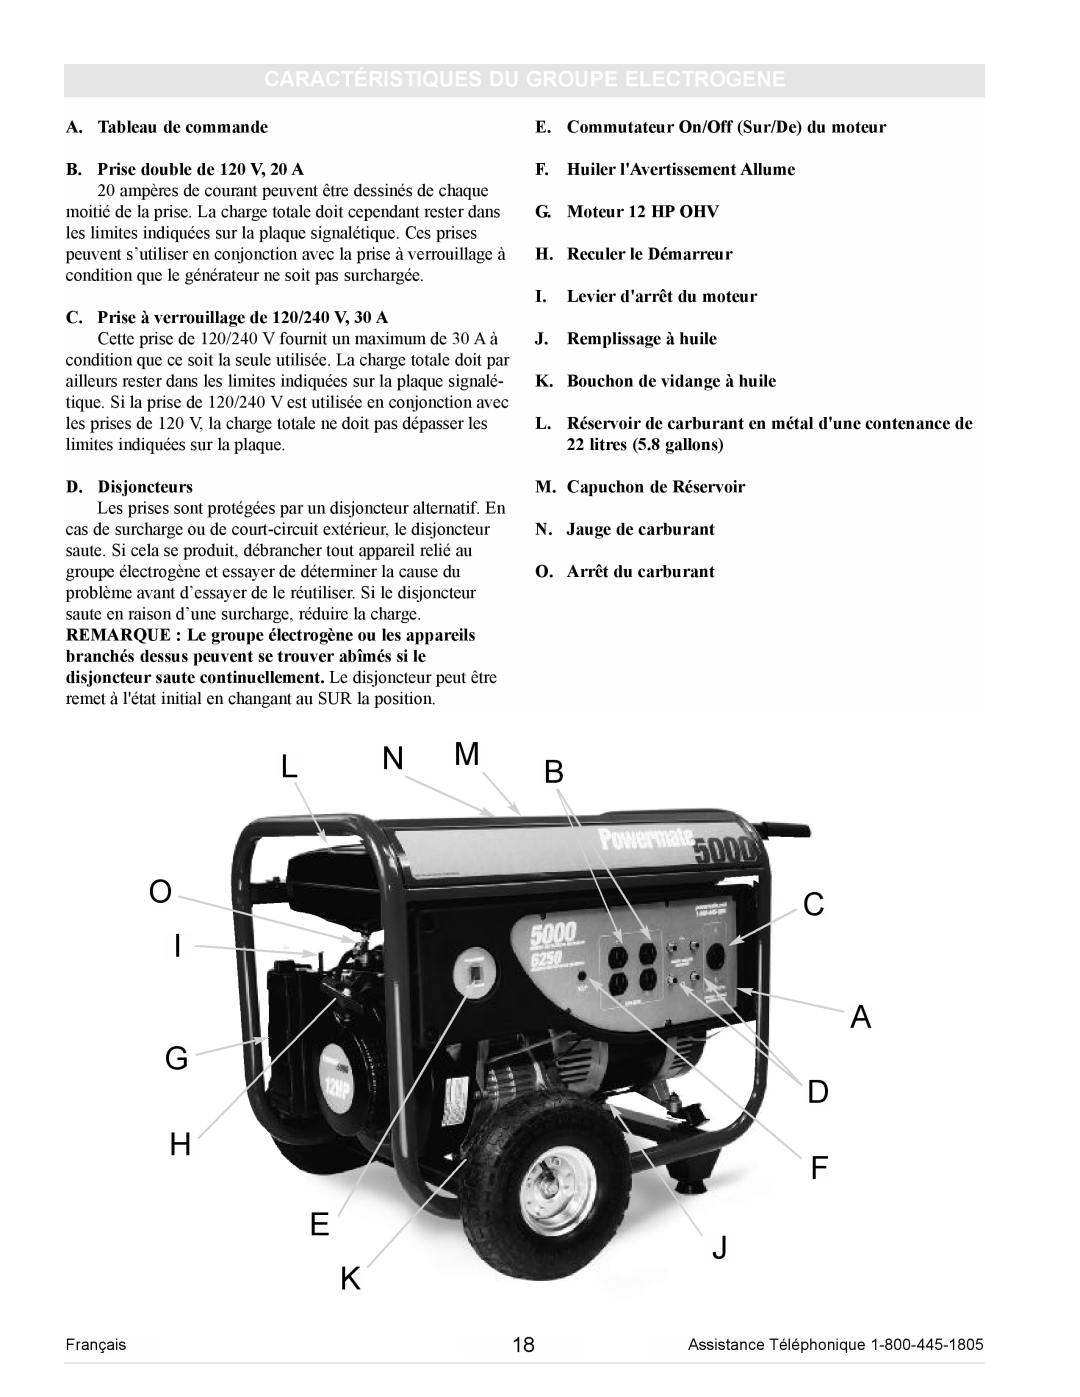 Powermate PM0105000 manual L N M B Oc A G D, Caractéristiques Du Groupe Electrogene 